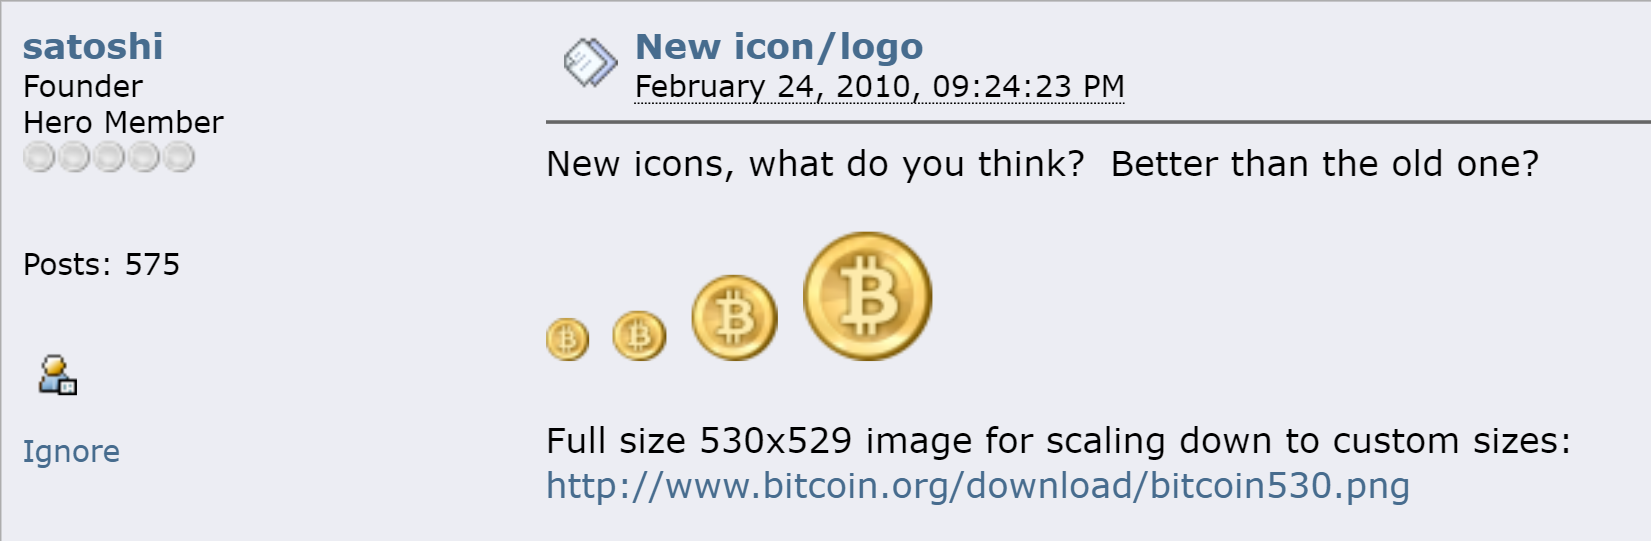 Bitcoin : connaissez-vous l’histoire à l’origine de son logo ?